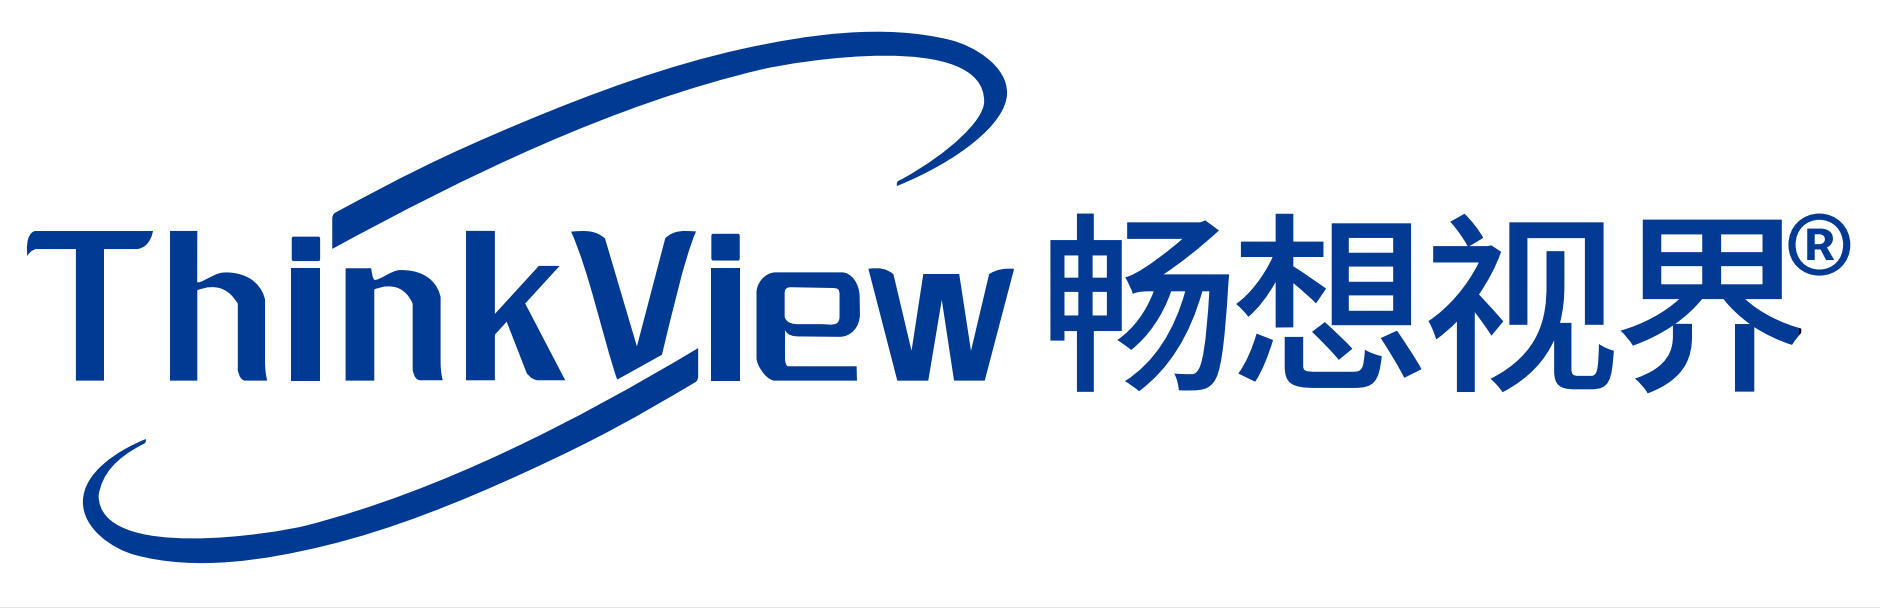 Shenzhen Thinkview Technology Co, Ltd